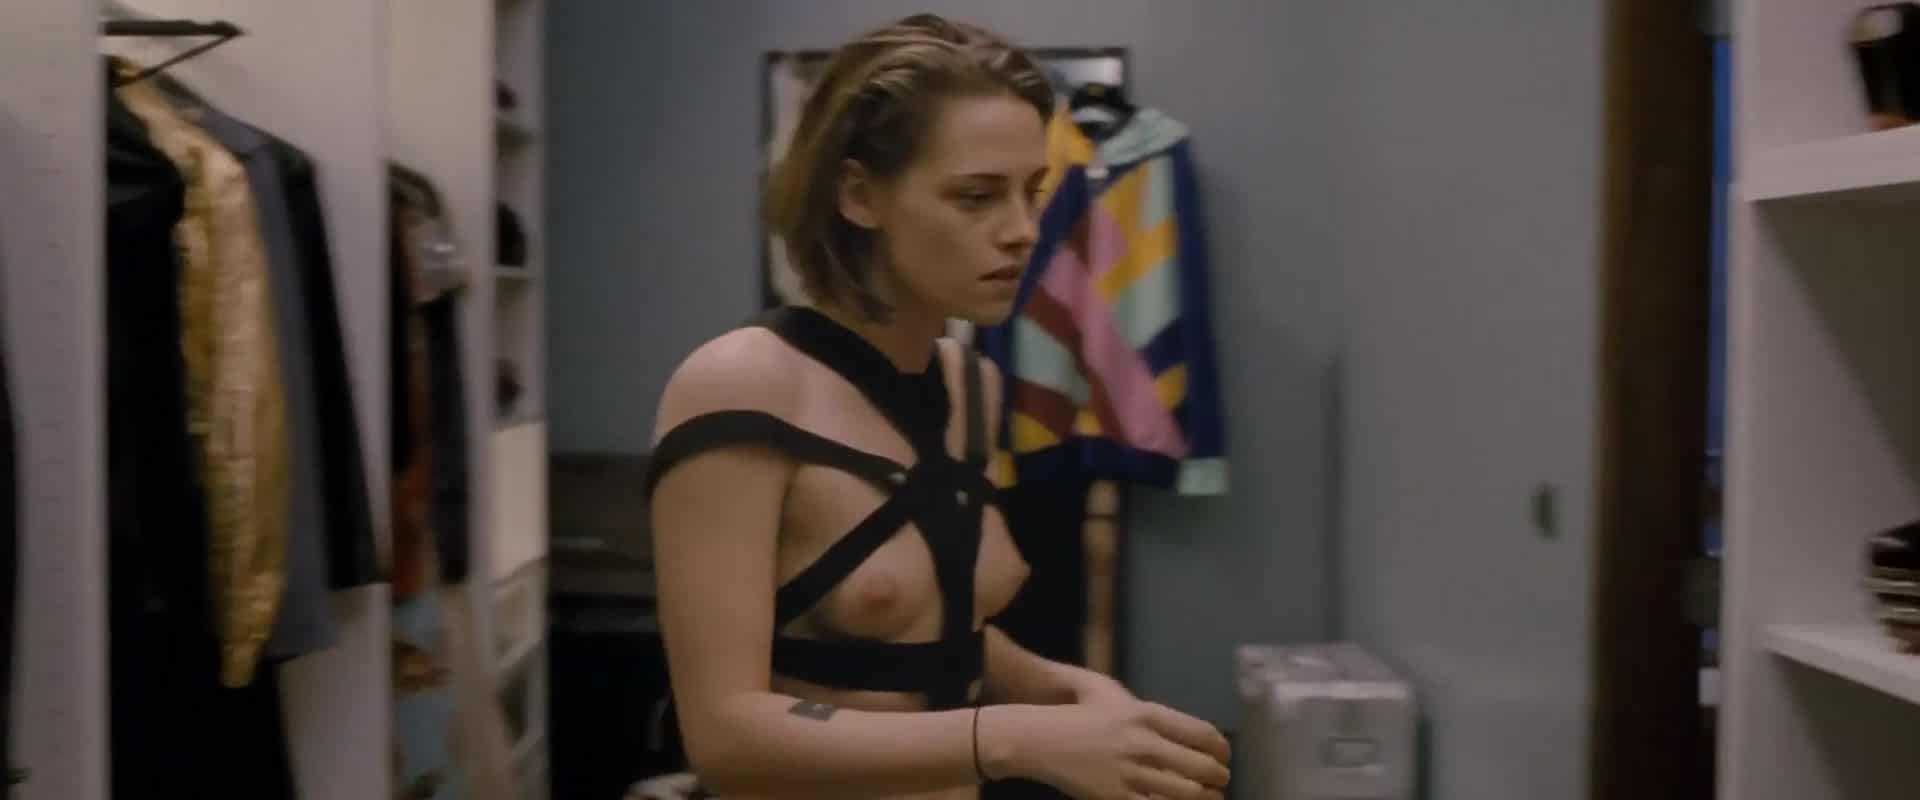 Kristen Stewart sex tape